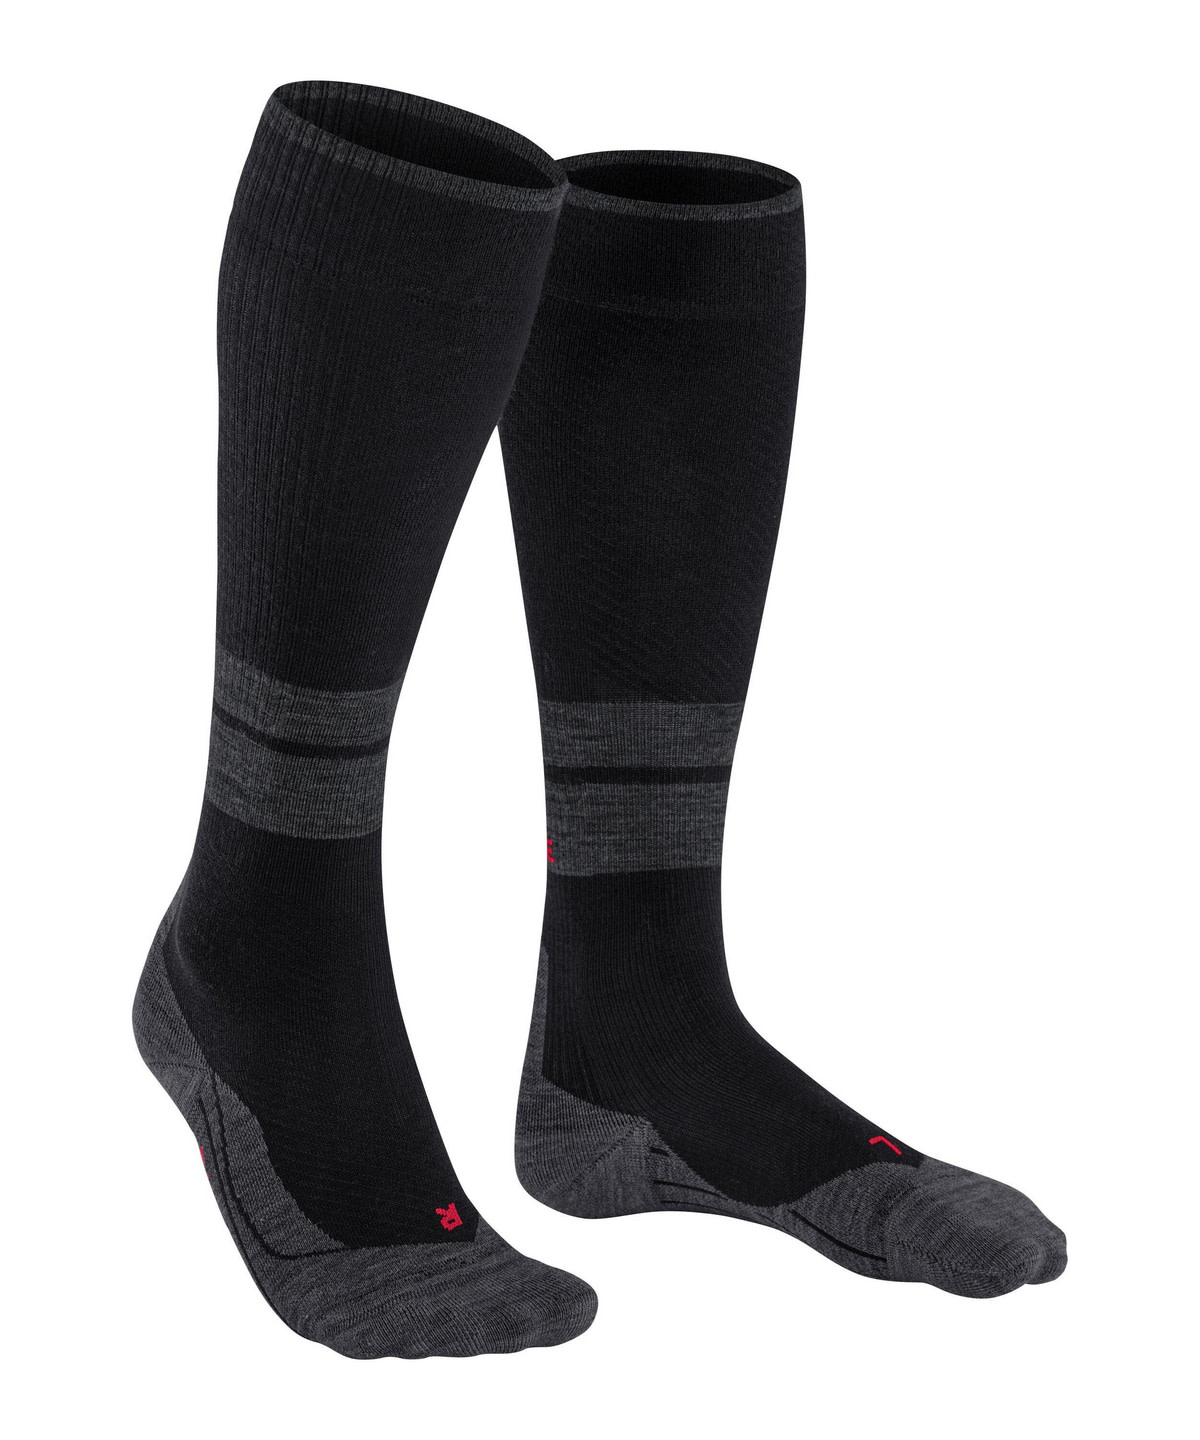 Falke Men’s TK Compression Energy Trekking Knee-high Socks Black